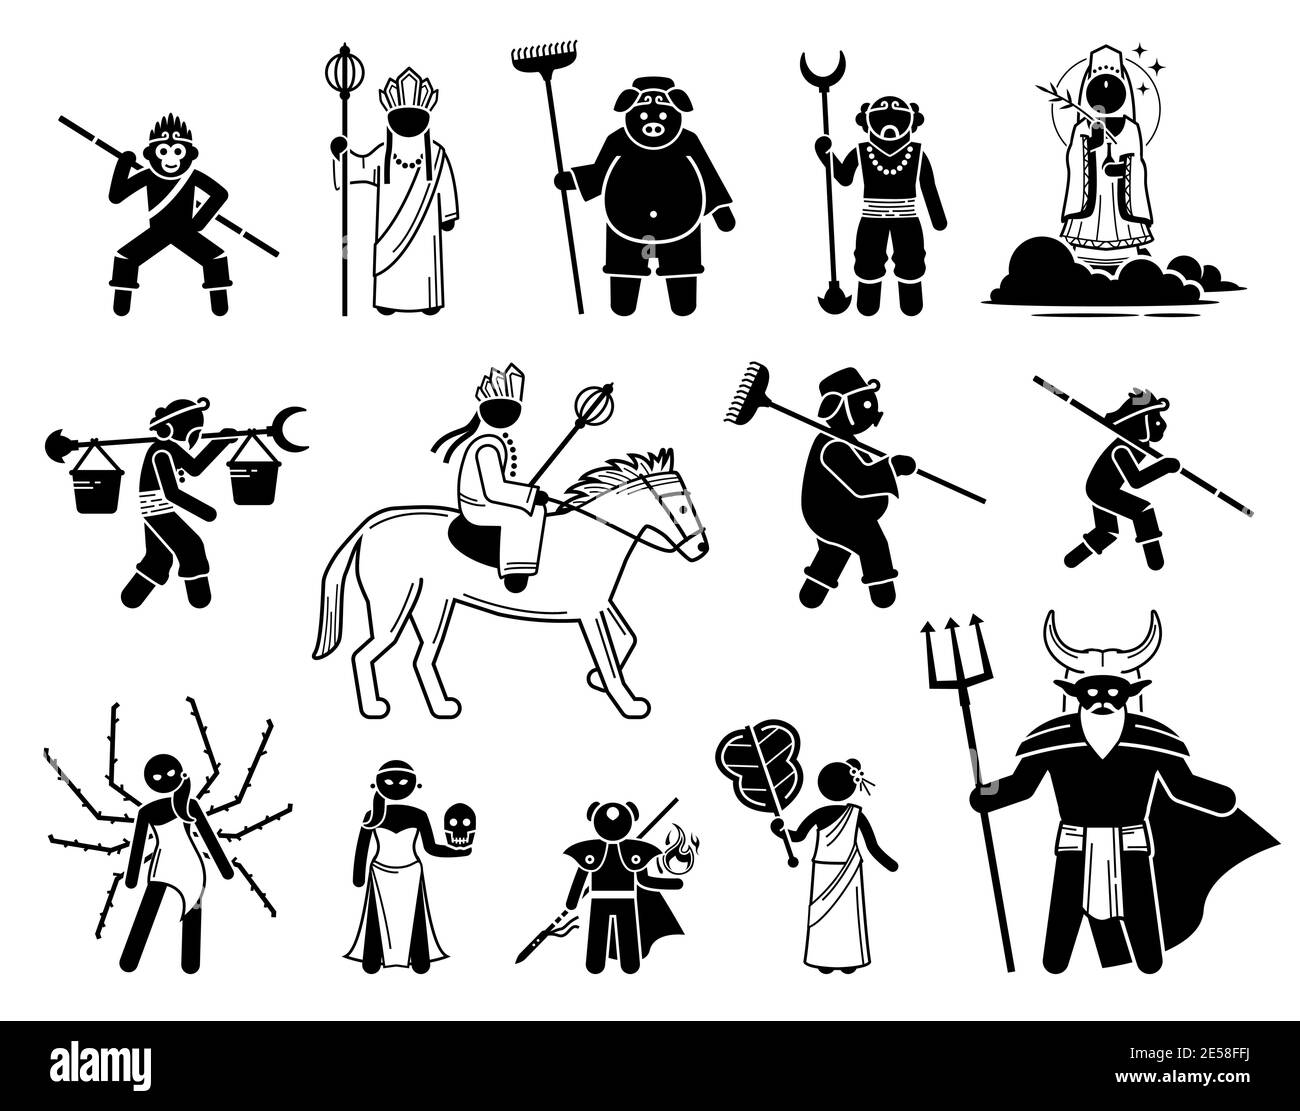 Ensemble d'icônes Journey to the West Characters. Illustrations vectorielles de héros légendaires et de méchants de la mythologie chinoise. Illustration de Vecteur